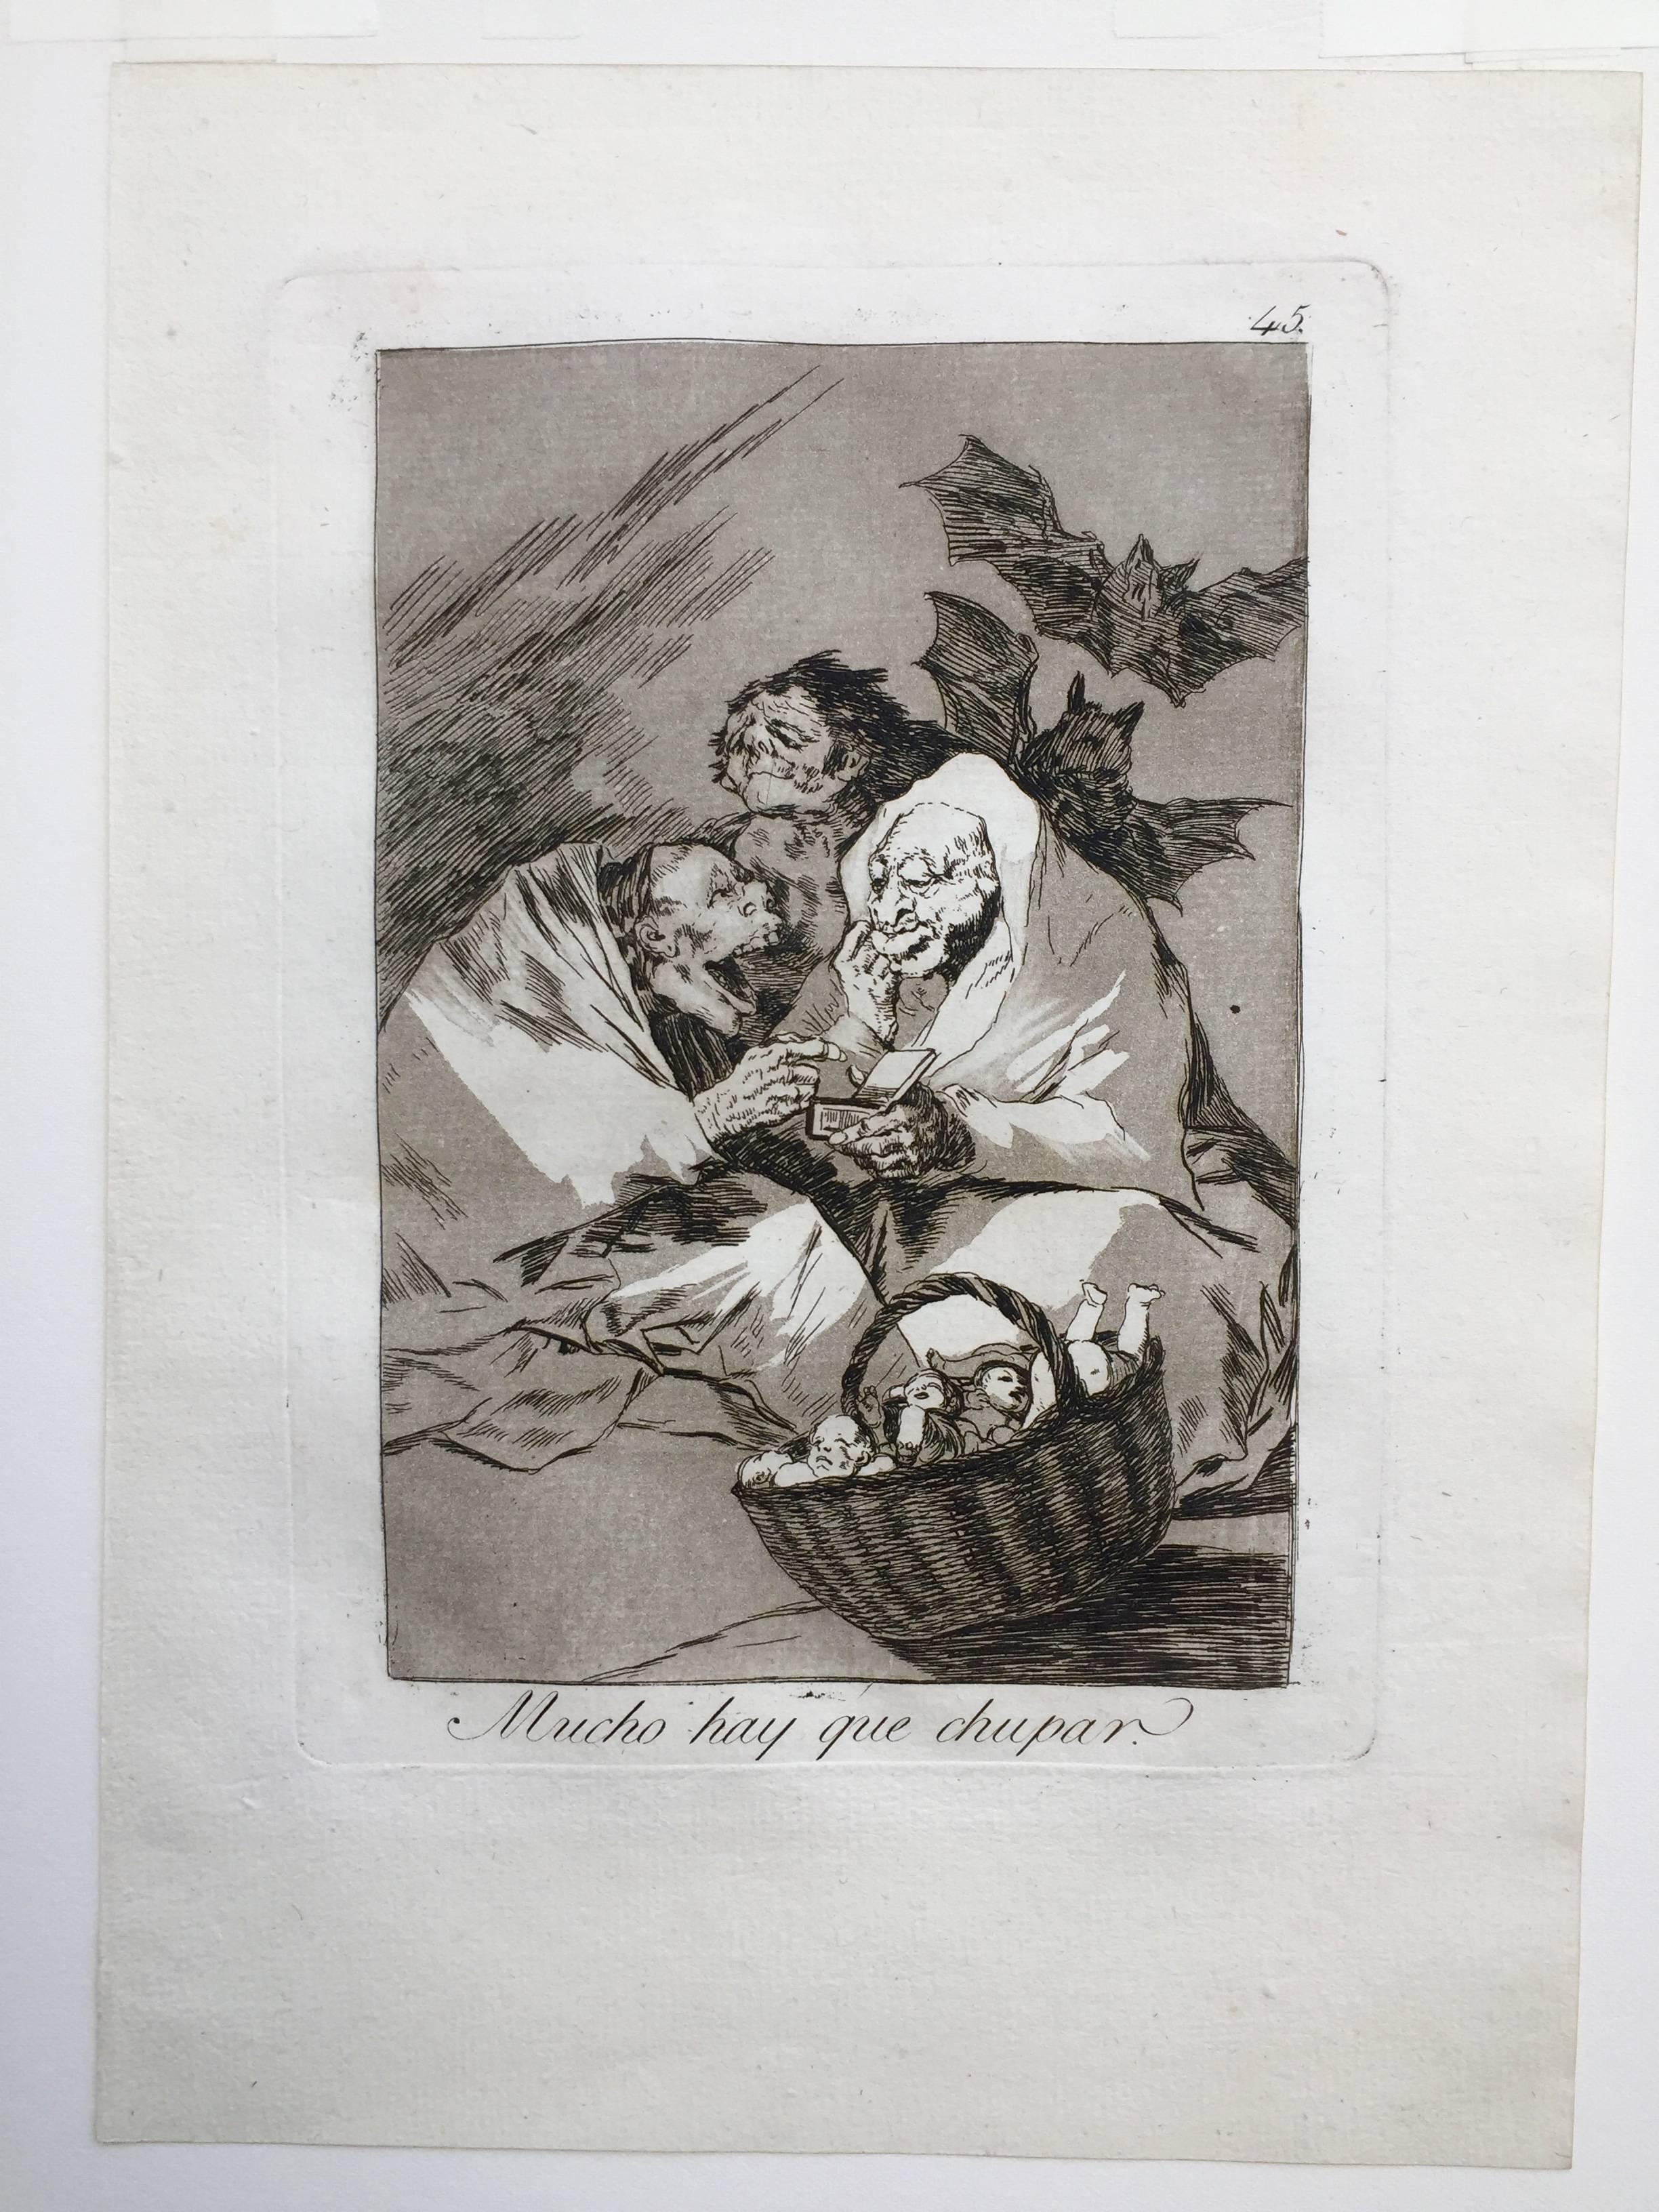 MUCHO HAY QUE CHUPAR - Gray Figurative Print by Francisco Goya